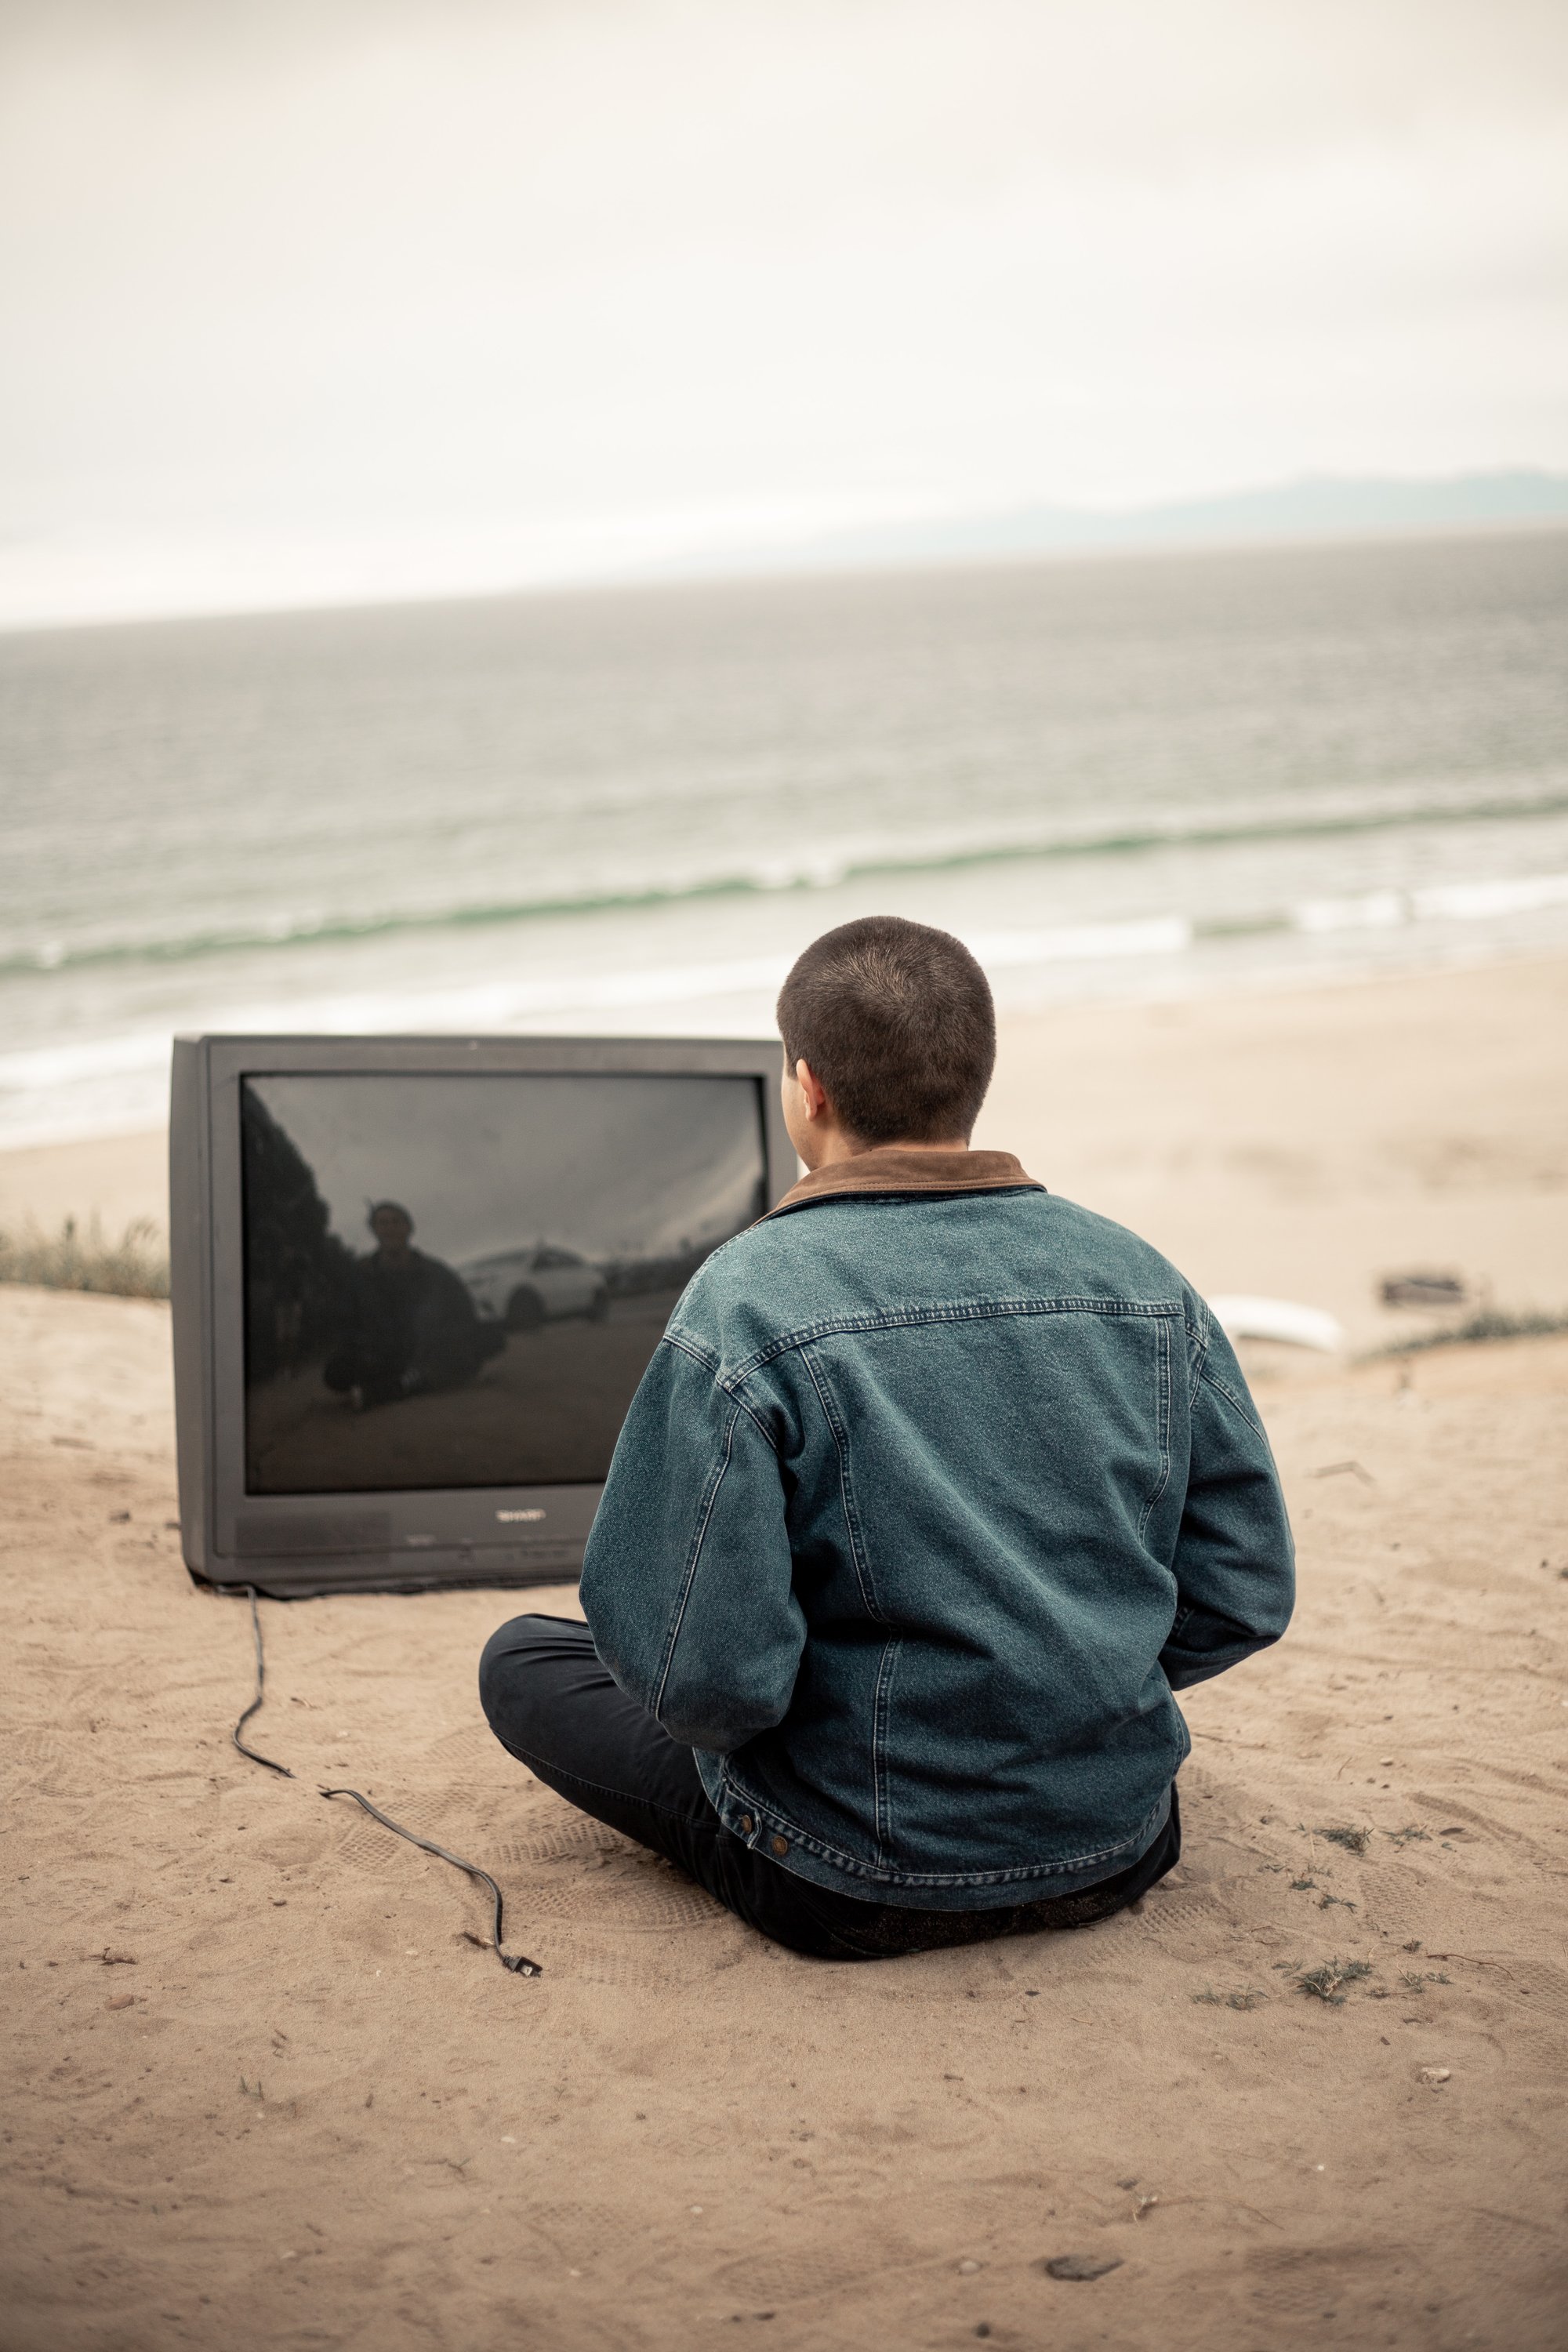 Mann sitzend vor Fernseher am Strand
Bild: Josh Kahen